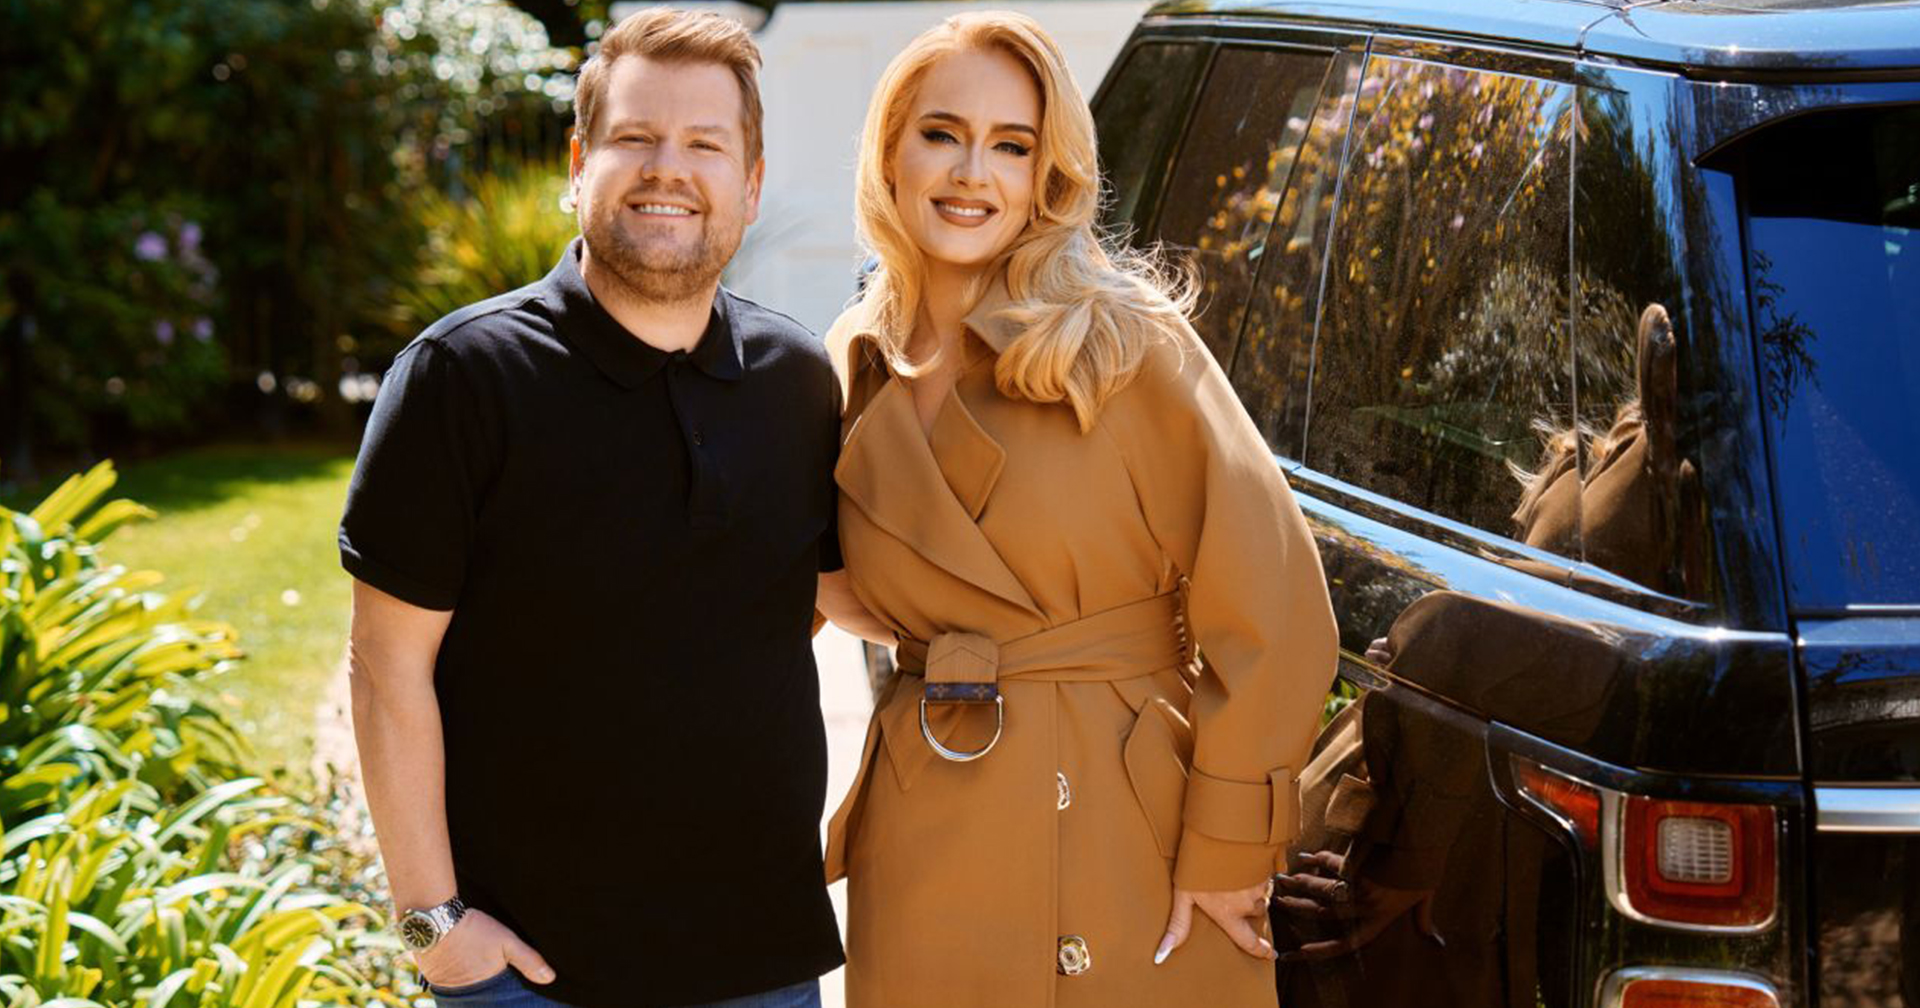 ปิดฉาก ‘Carpool Karaoke’ เชิญเพื่อนซี้ Adele ขับรถพา James Corden เล่าความประทับใจรายการตลอด 8 ปี